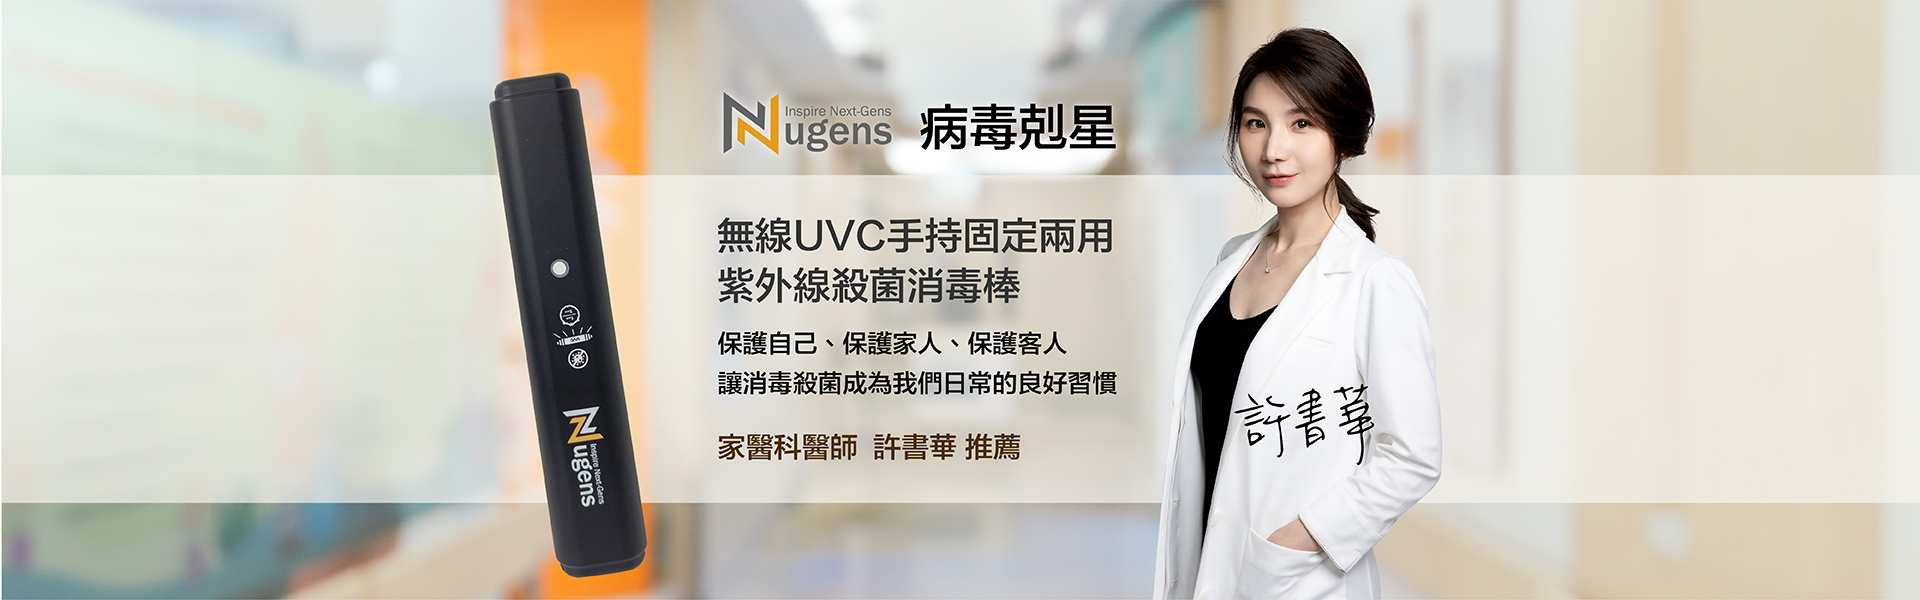 家醫科醫師許書華推薦-無線UVC手持固定兩用紫外線殺菌消毒棒-電腦尺寸